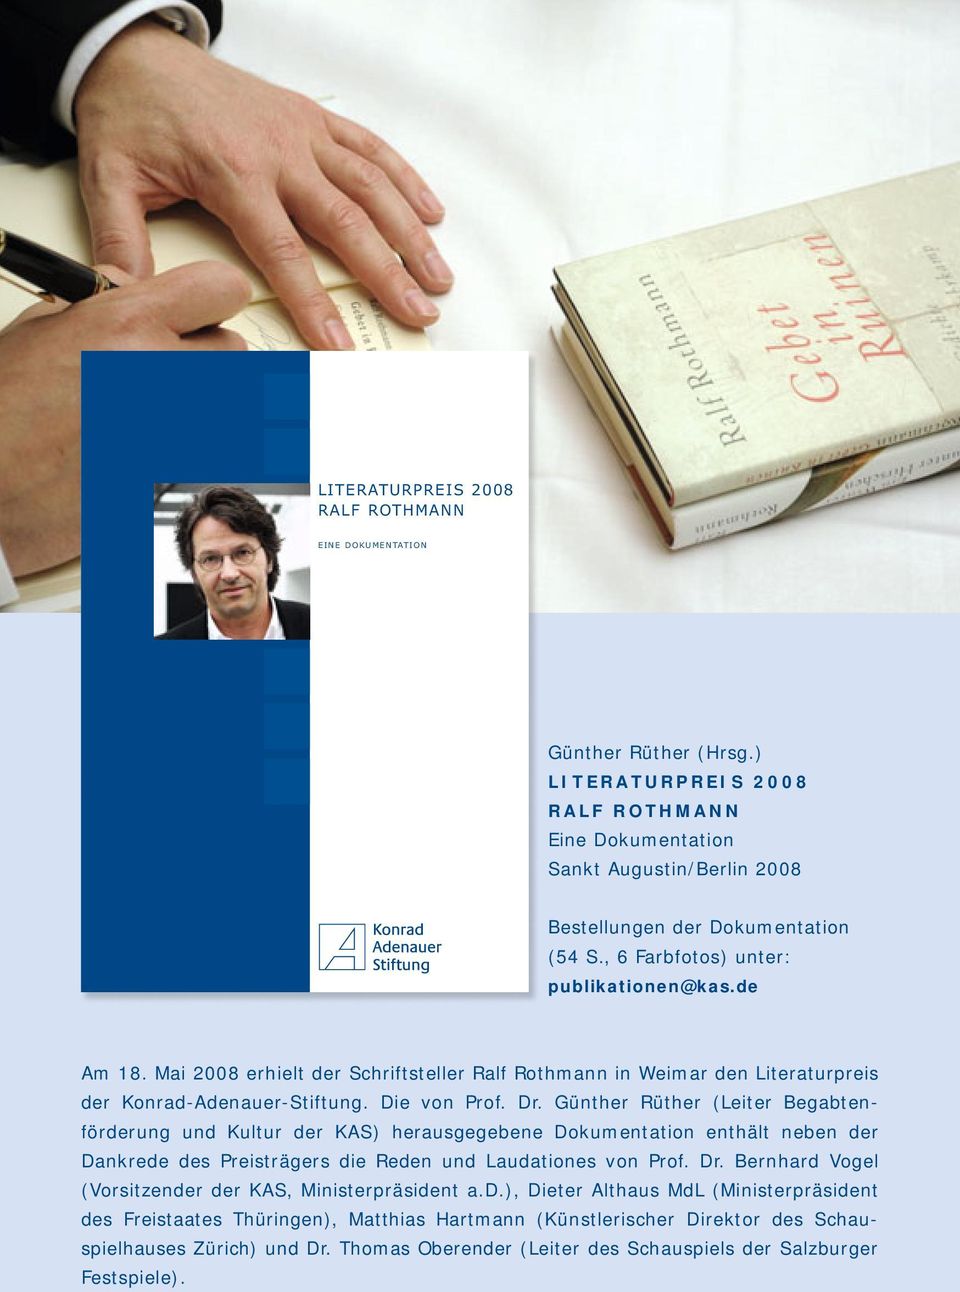 Günther Rüther (Leiter Begabtenförderung und Kultur der KAS) herausgegebene Dokumentation enthält neben der Dankrede des Preisträgers die Reden und Laudationes von Prof. Dr.